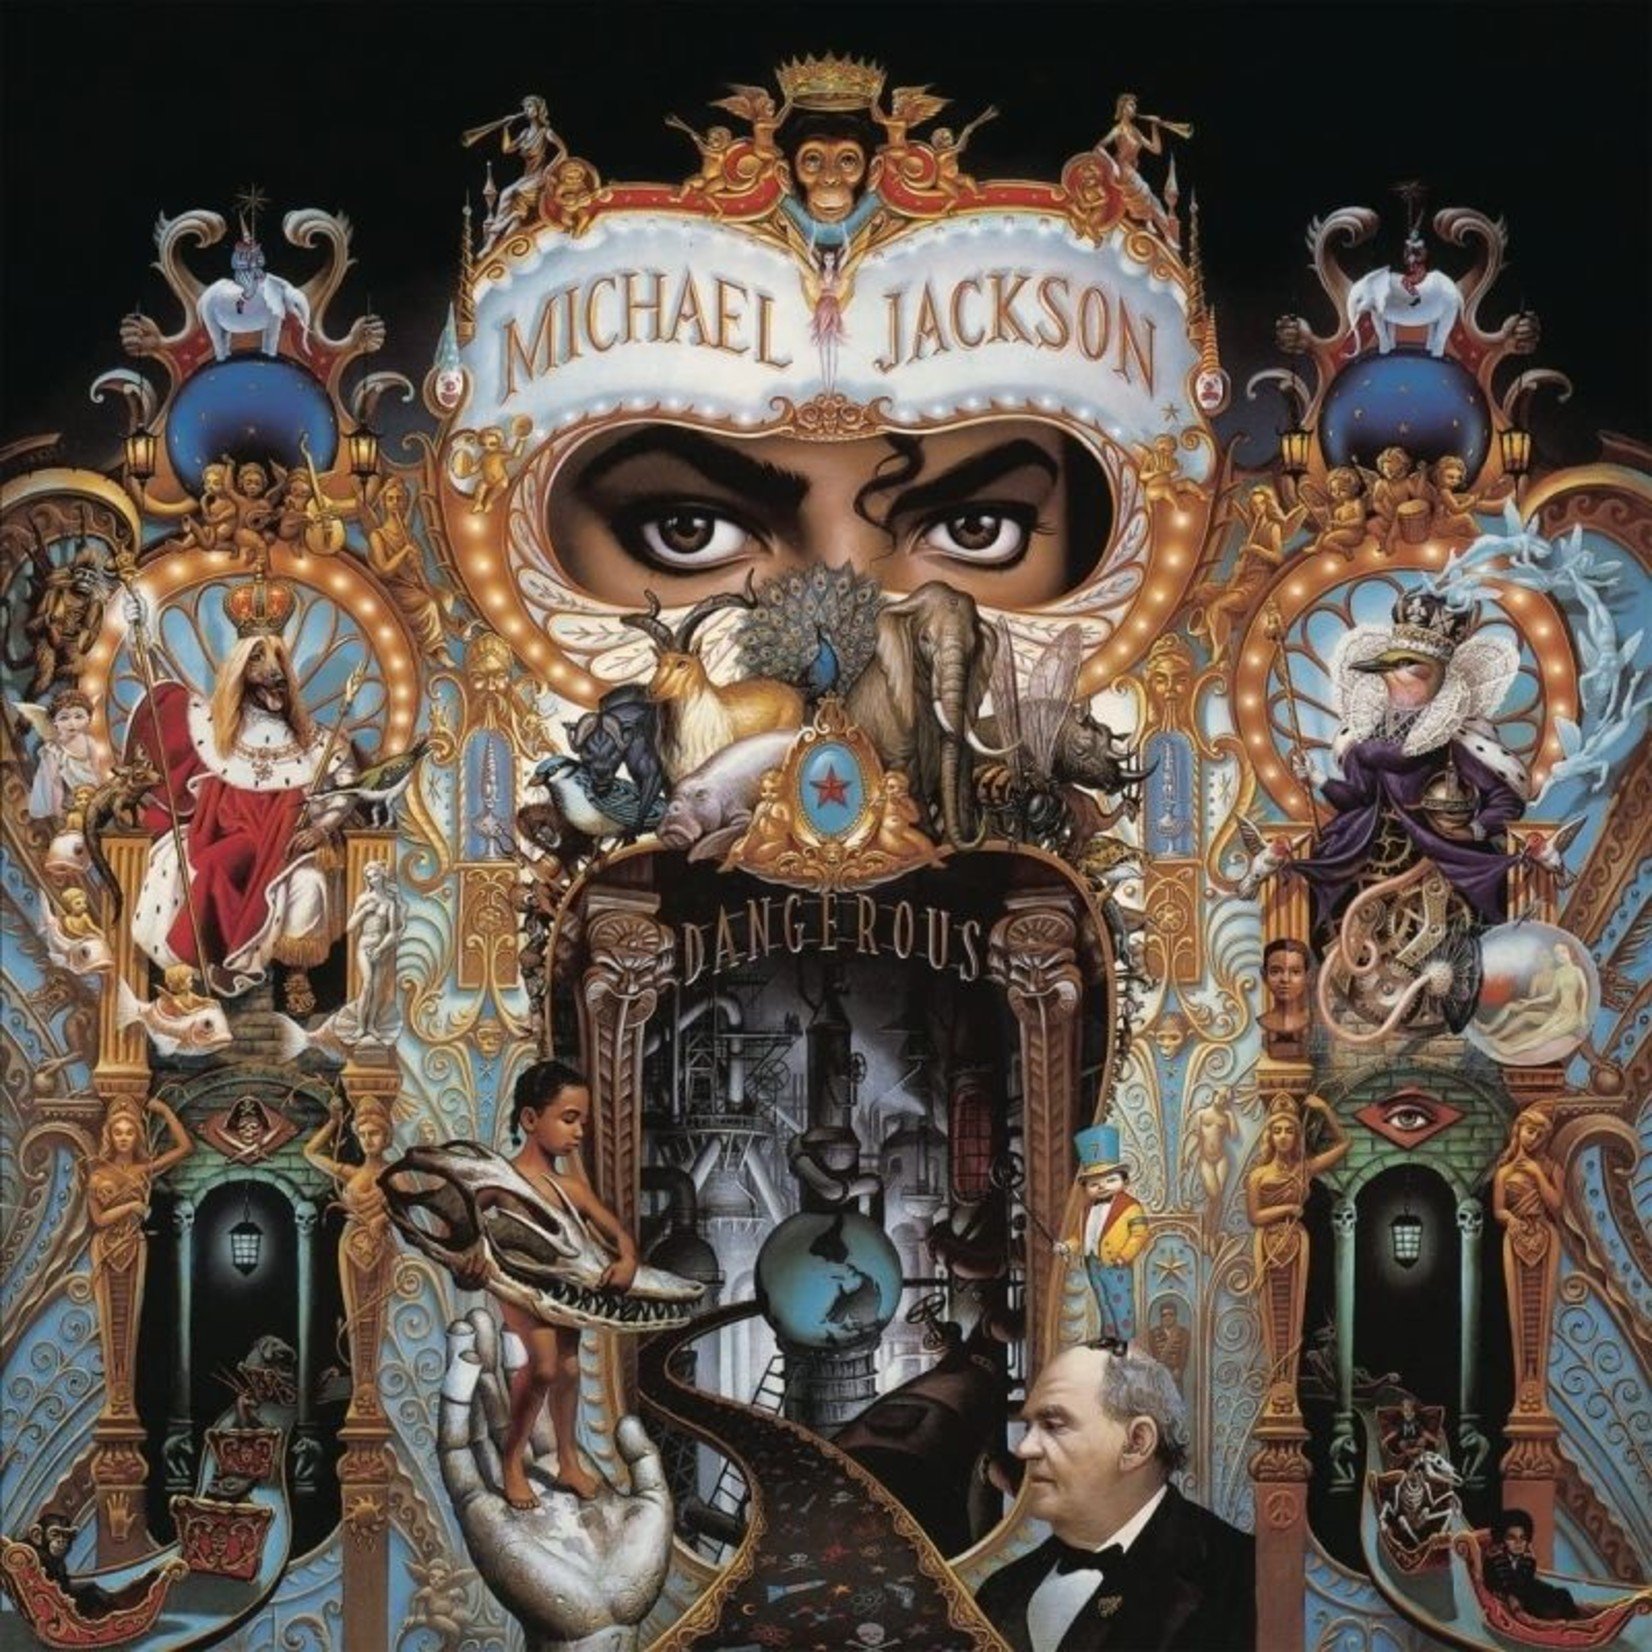 [New] Jackson, Michael: Dangerous (2LP, coloured vinyl) [EPIC/LEGACY]